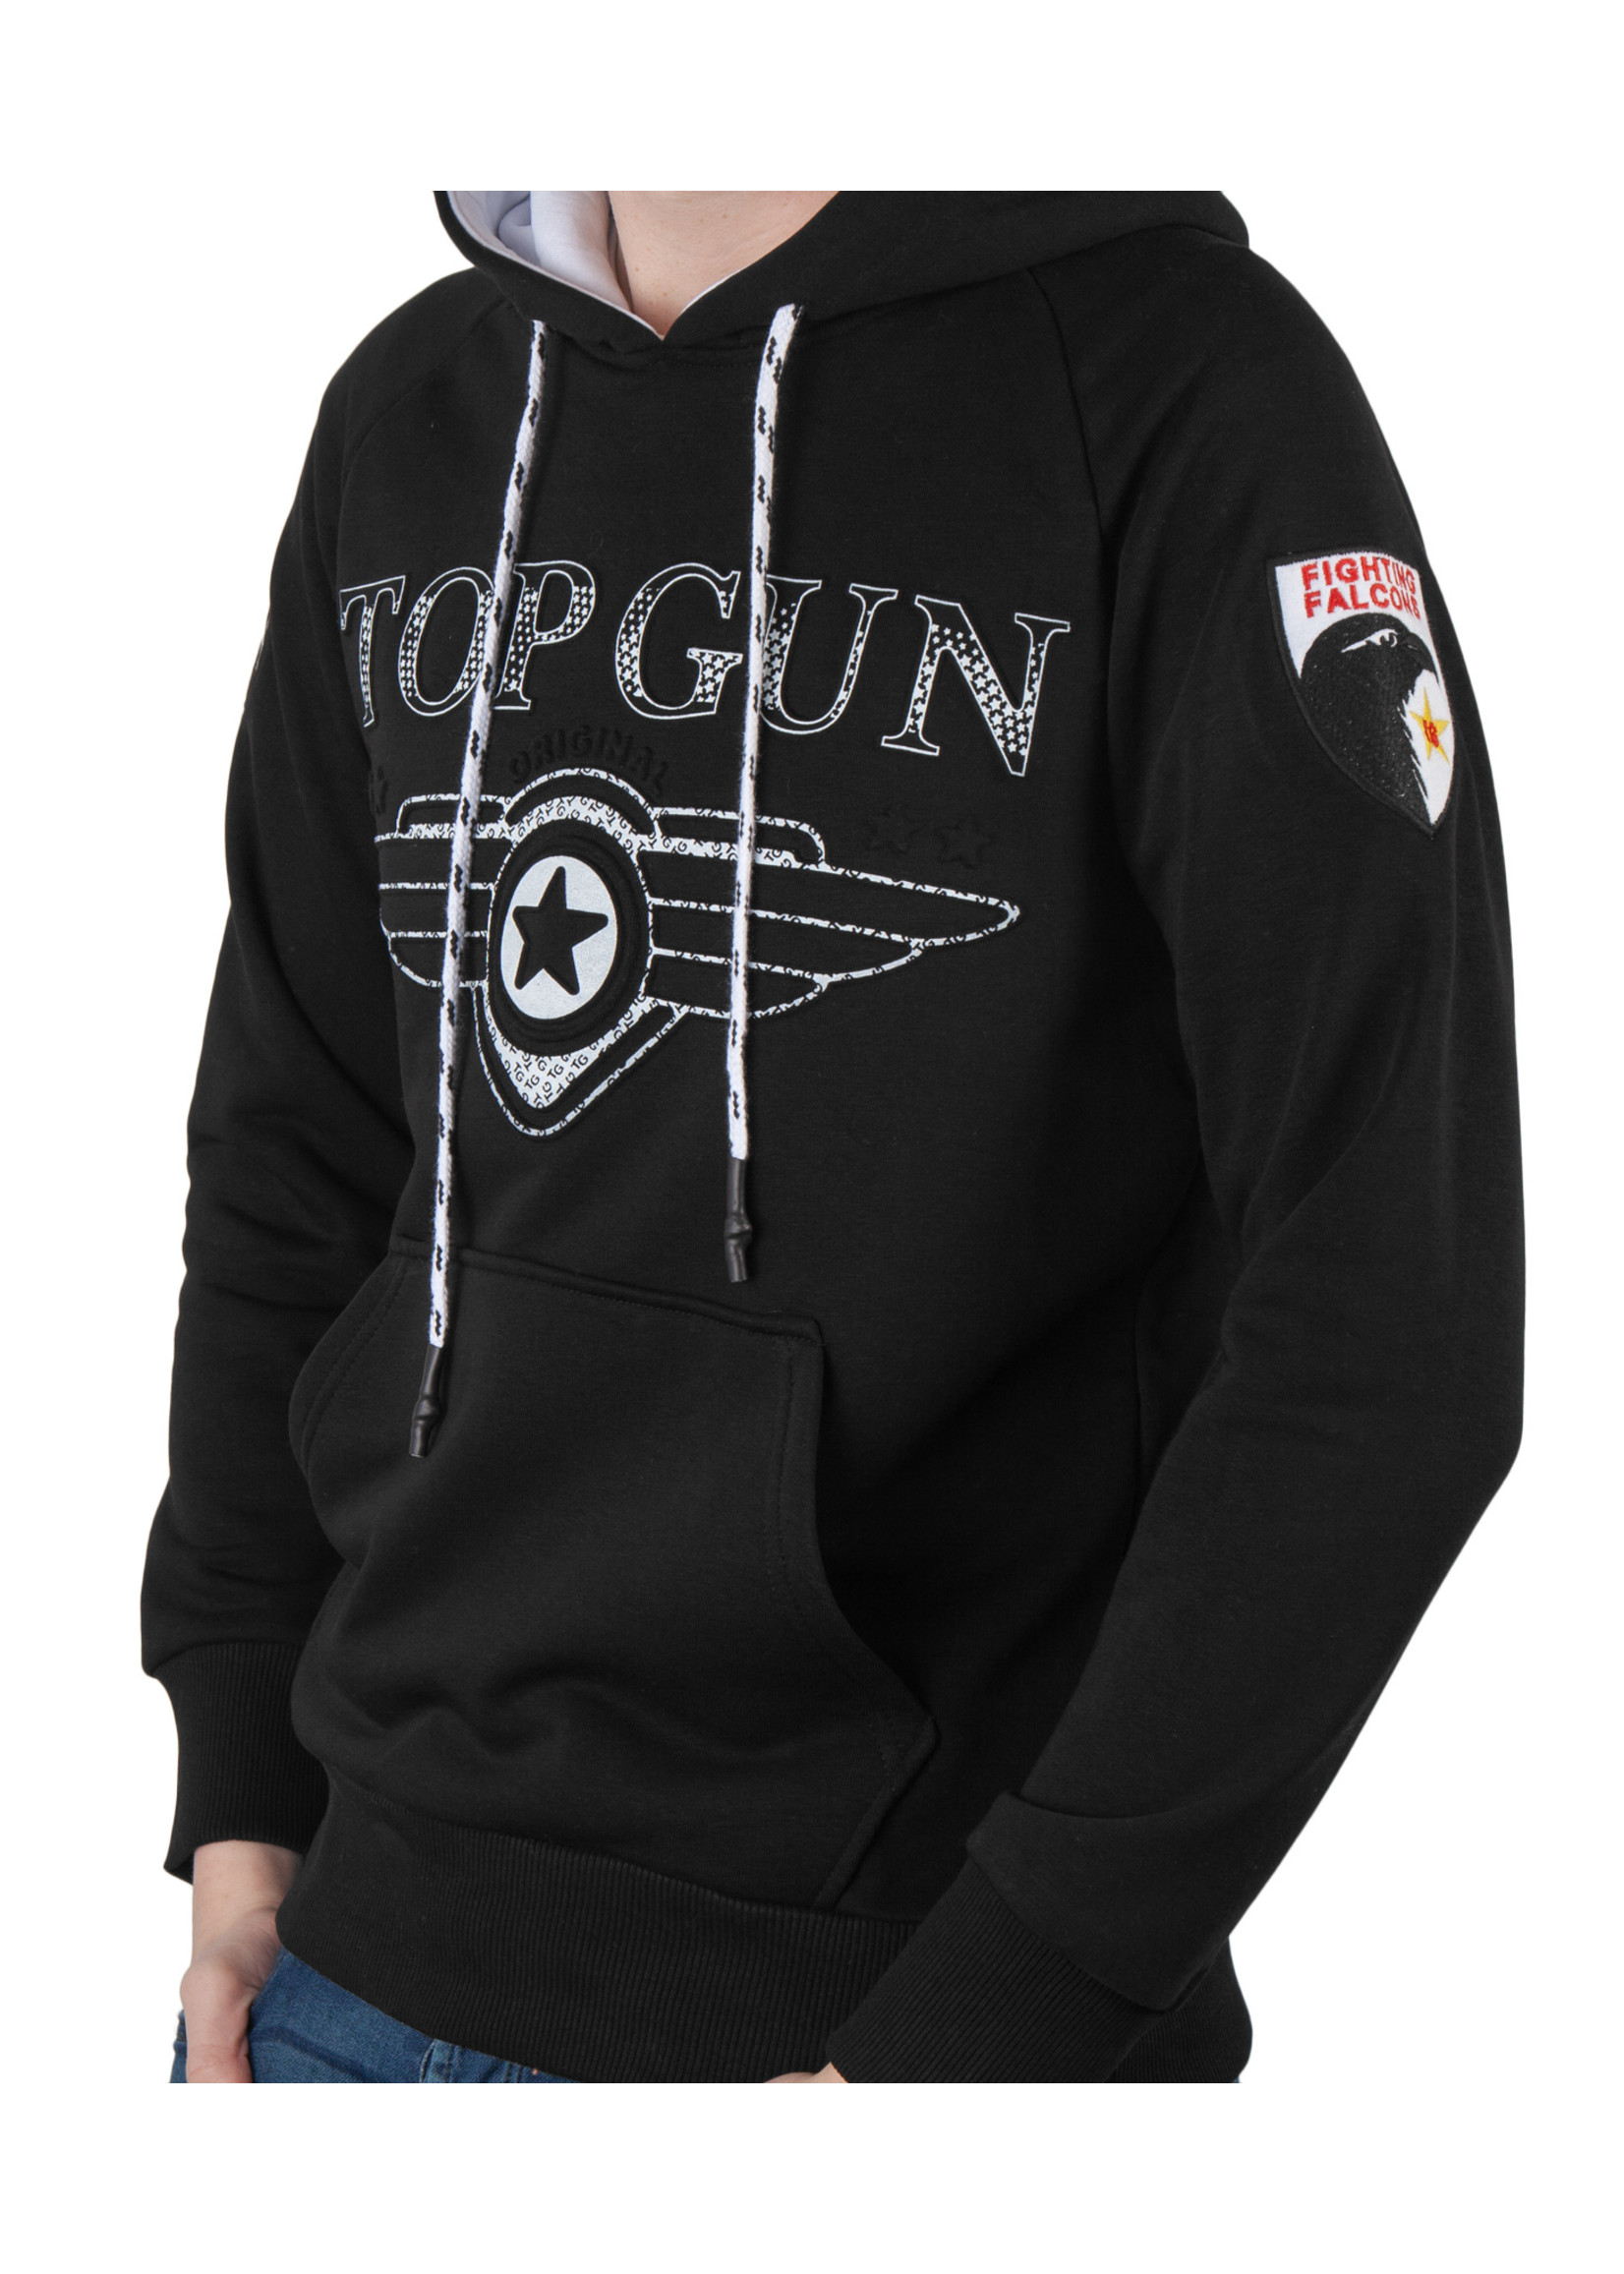 Top Gun Top Gun ® sweater met capuchon "Defend", zwart